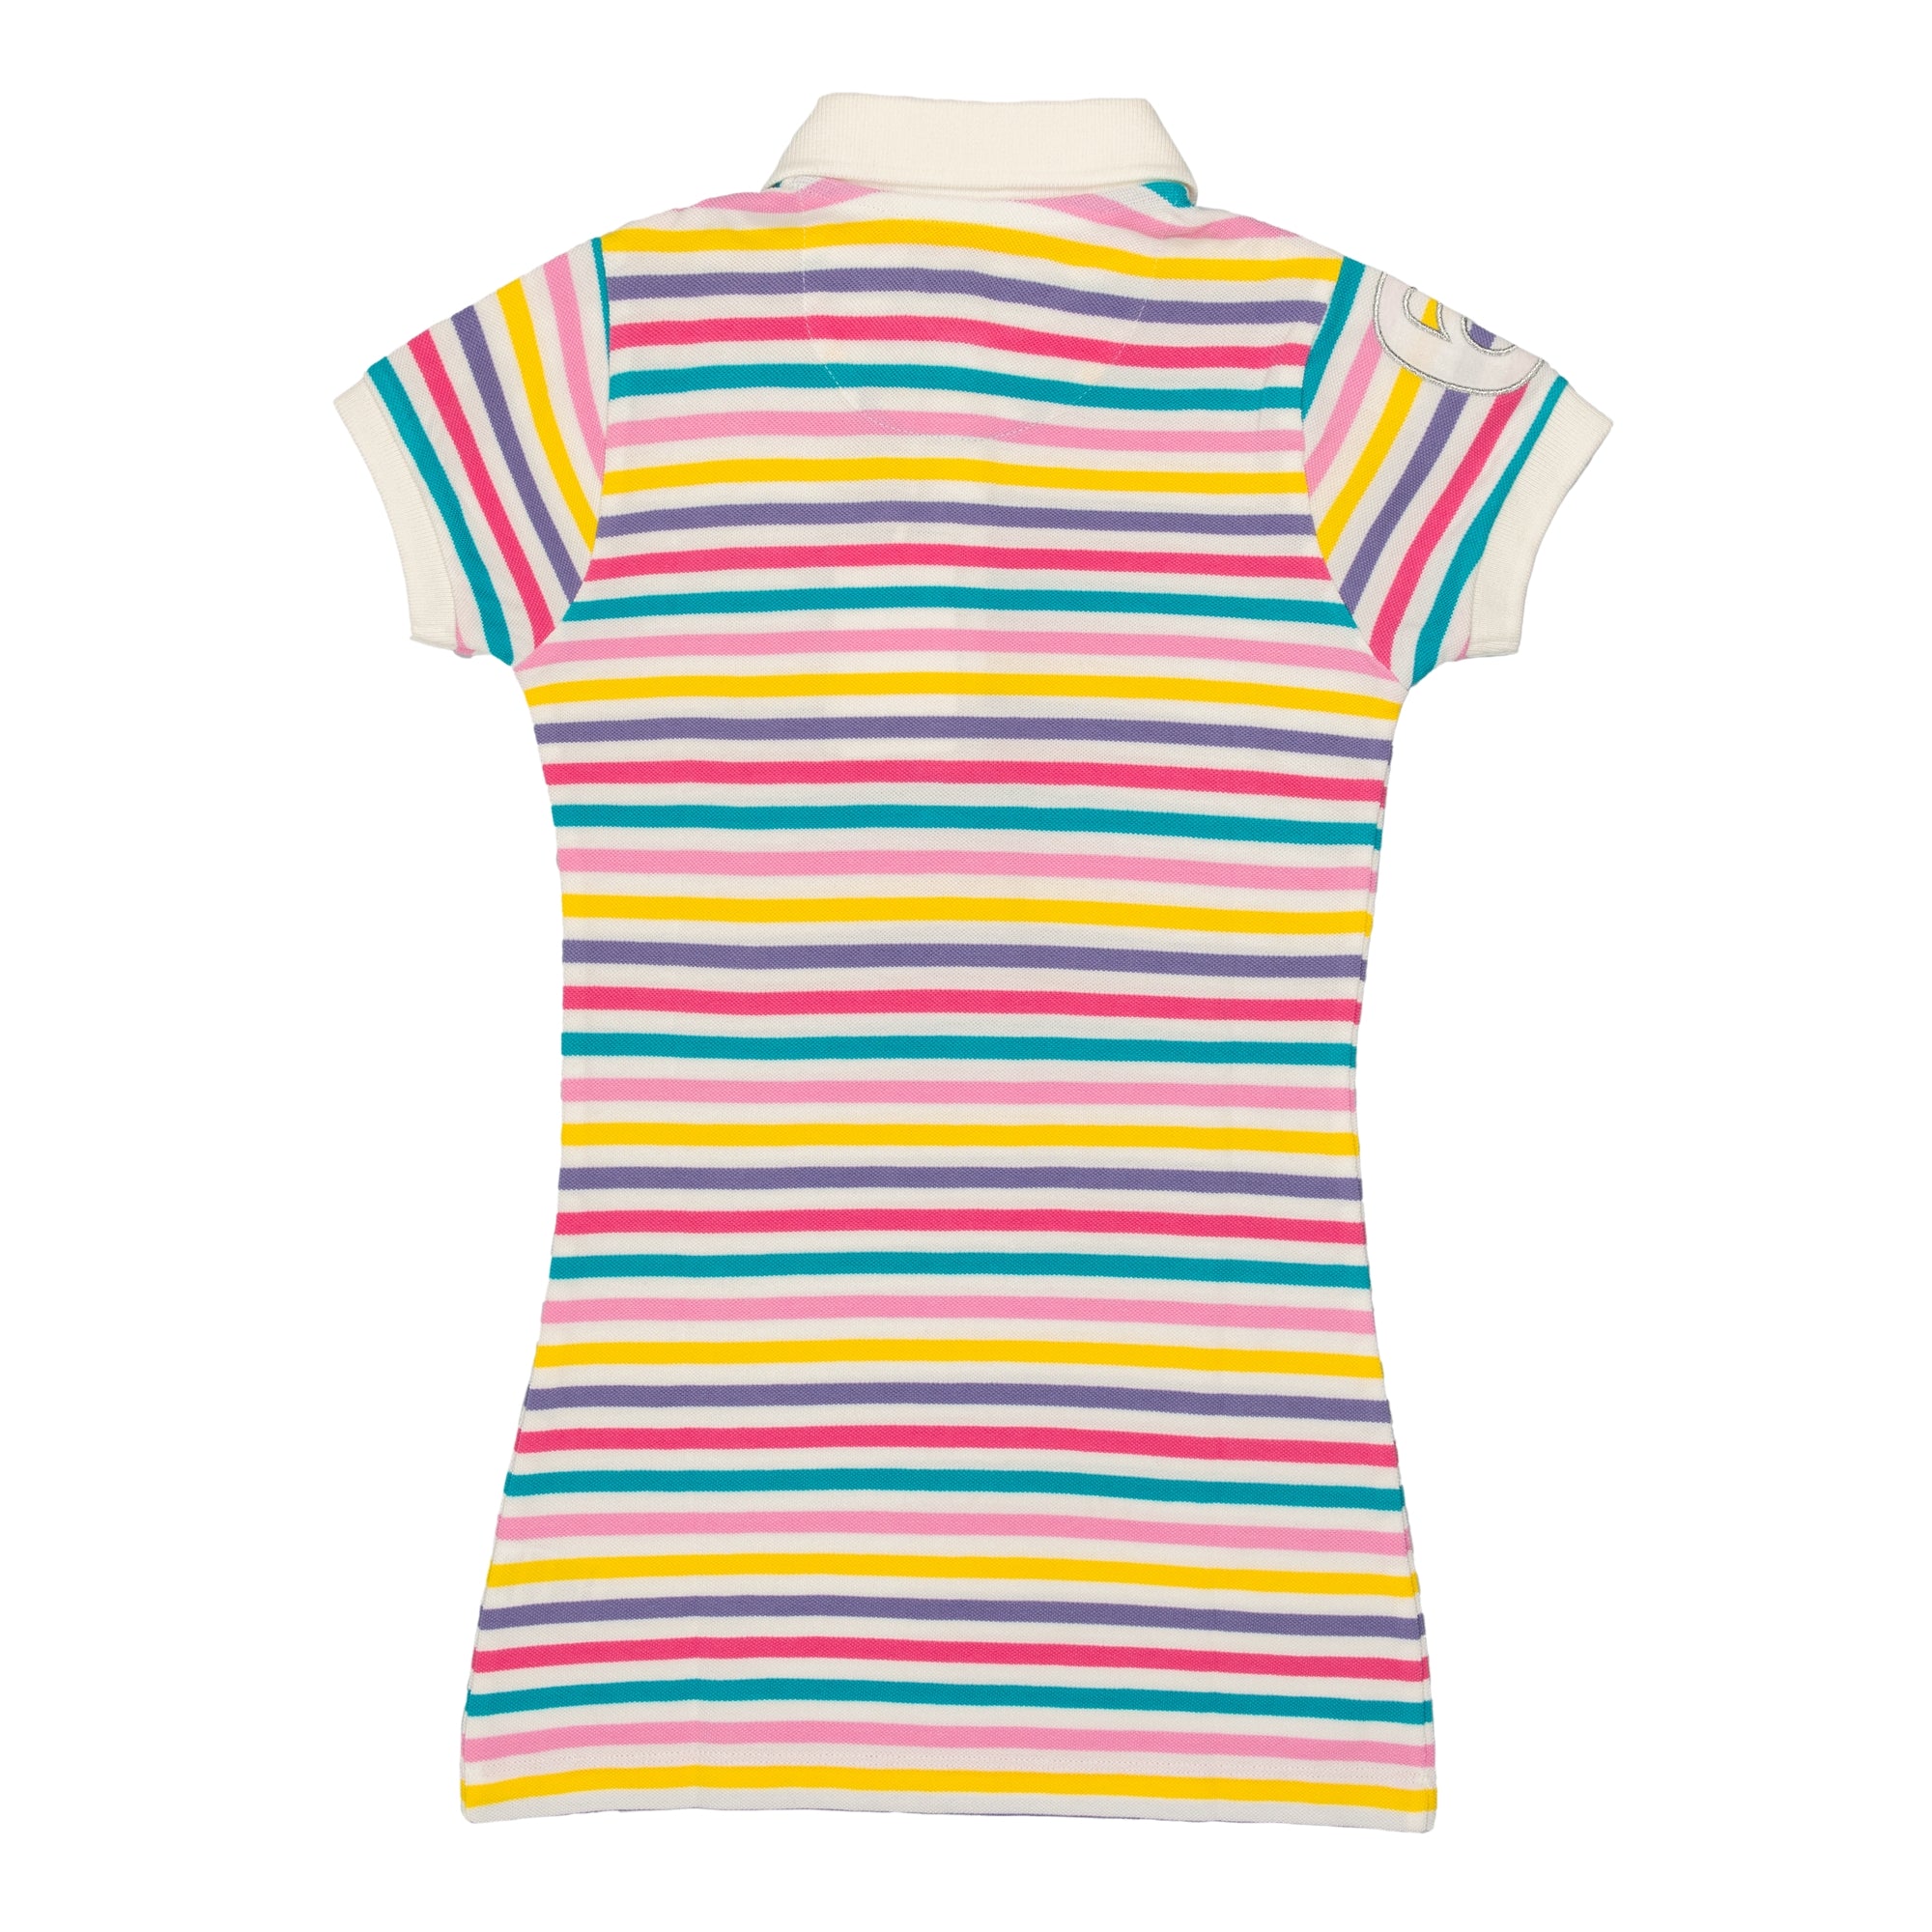 Multicolor striped piquet dress